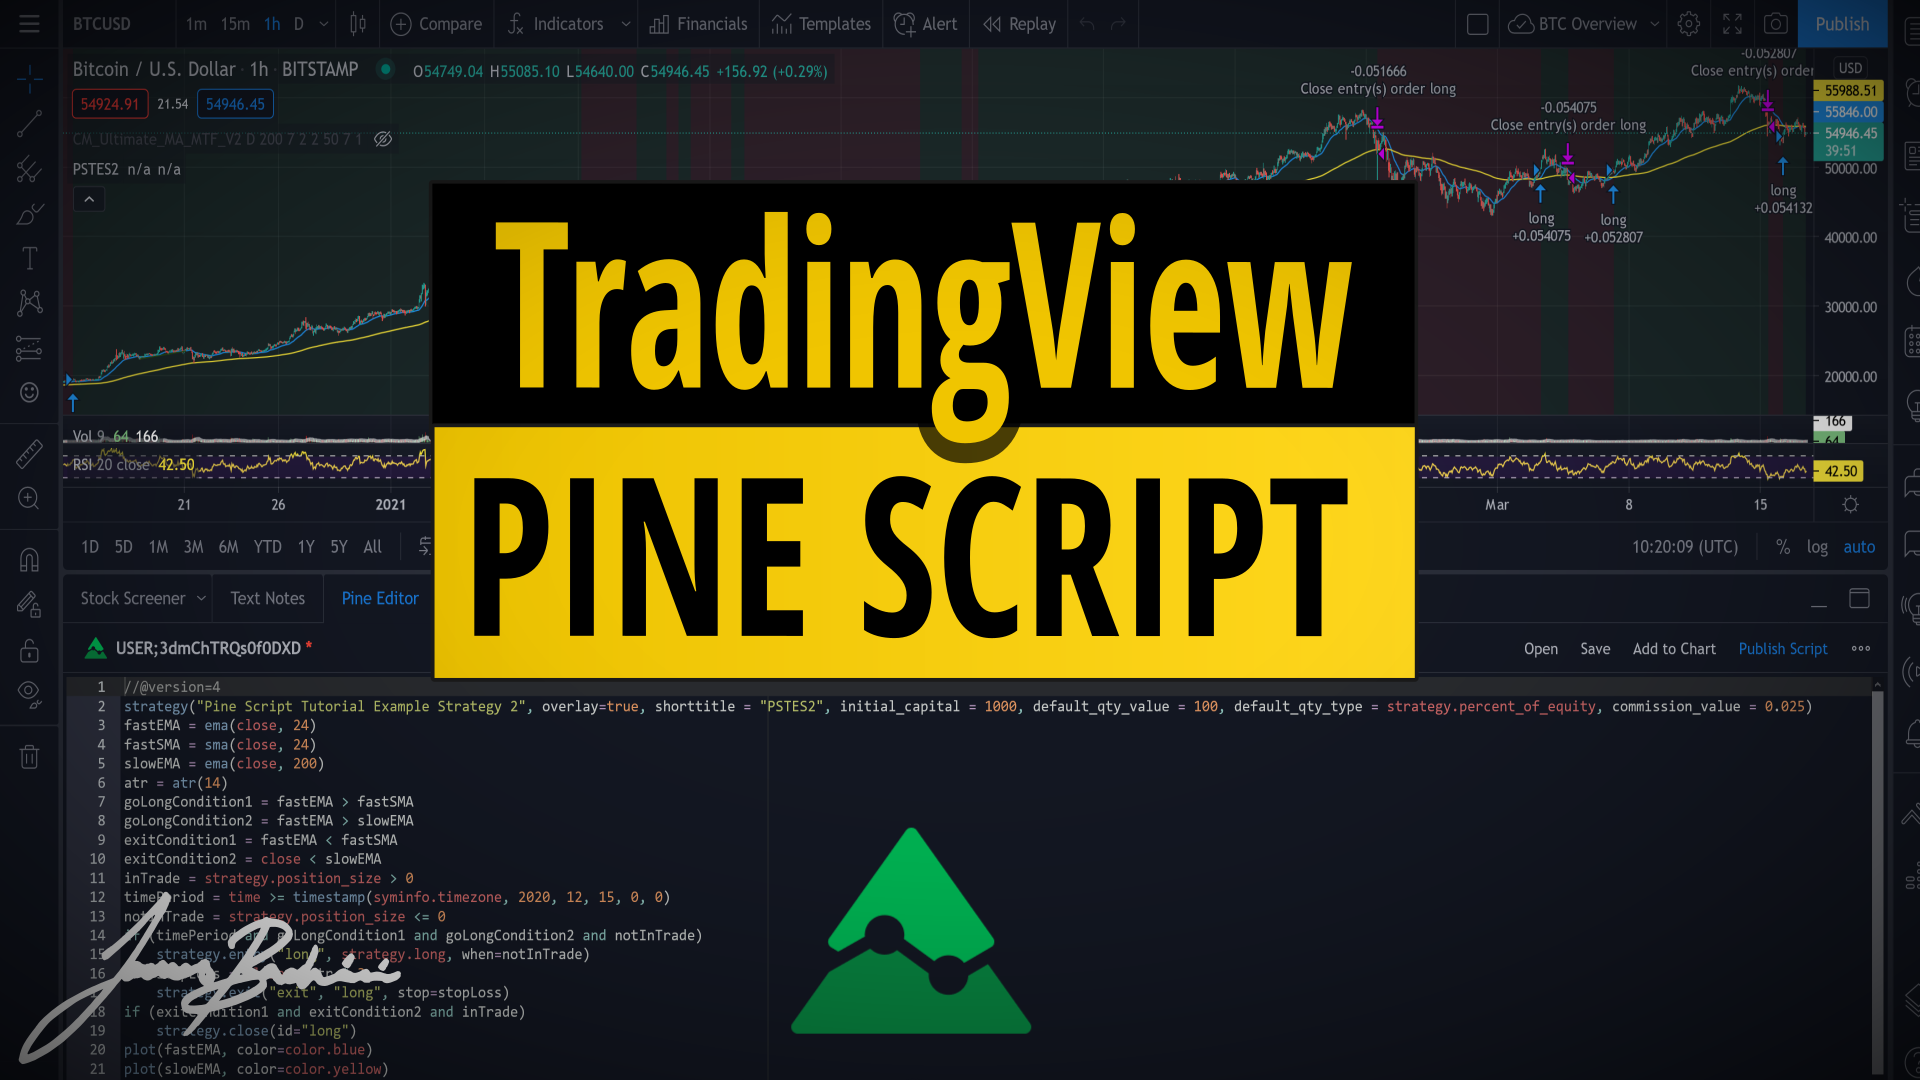 Pine Script Tutorial